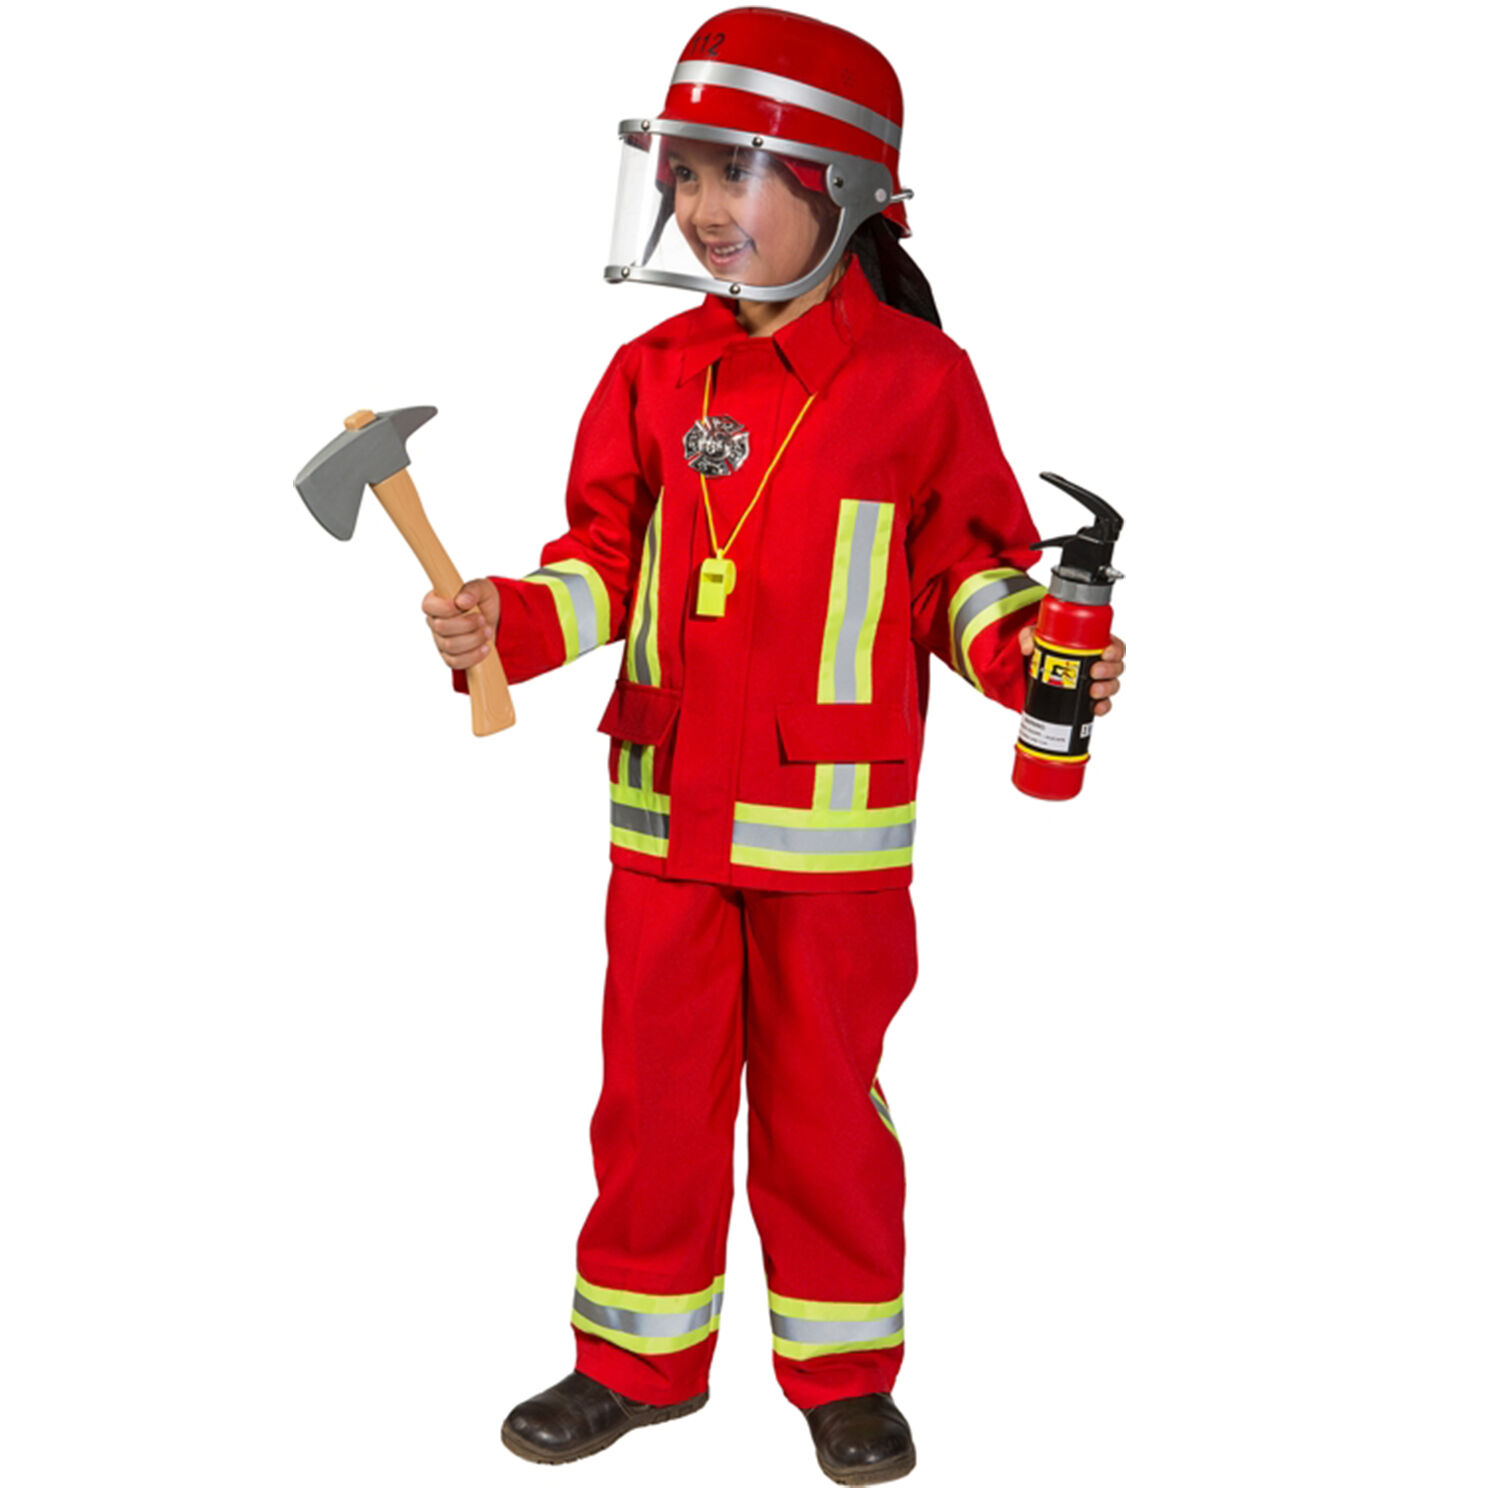 NEU Kinder-Kostm Feuerwehr, zweiteiliges Feuerwehrkostm, rot, Gr. 104